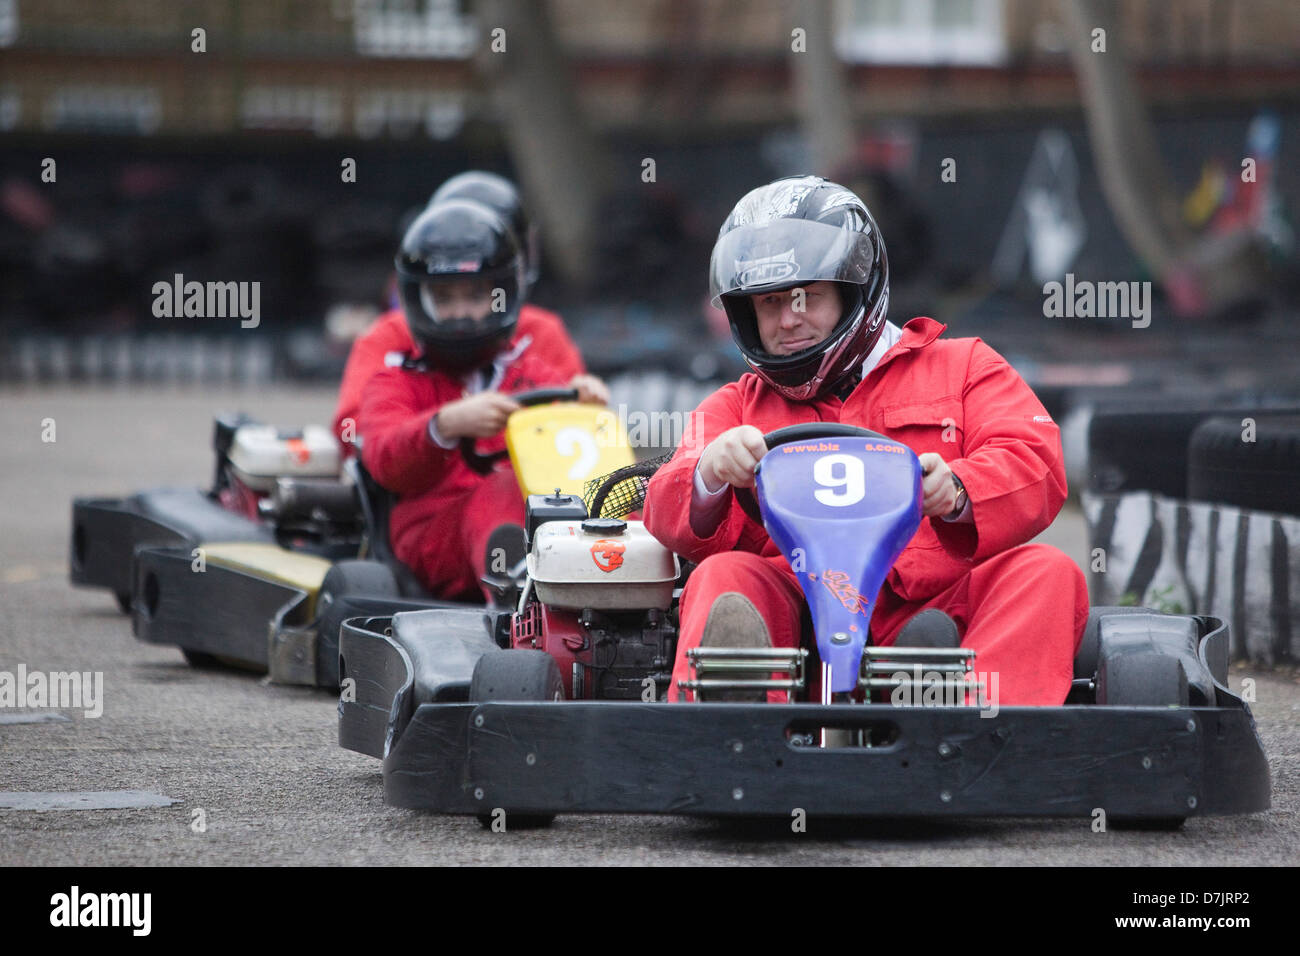 Le maire de Londres Boris Johnson va faire du karting dans un boiler suit à l'appui d'un organisme de bienfaisance Banque D'Images